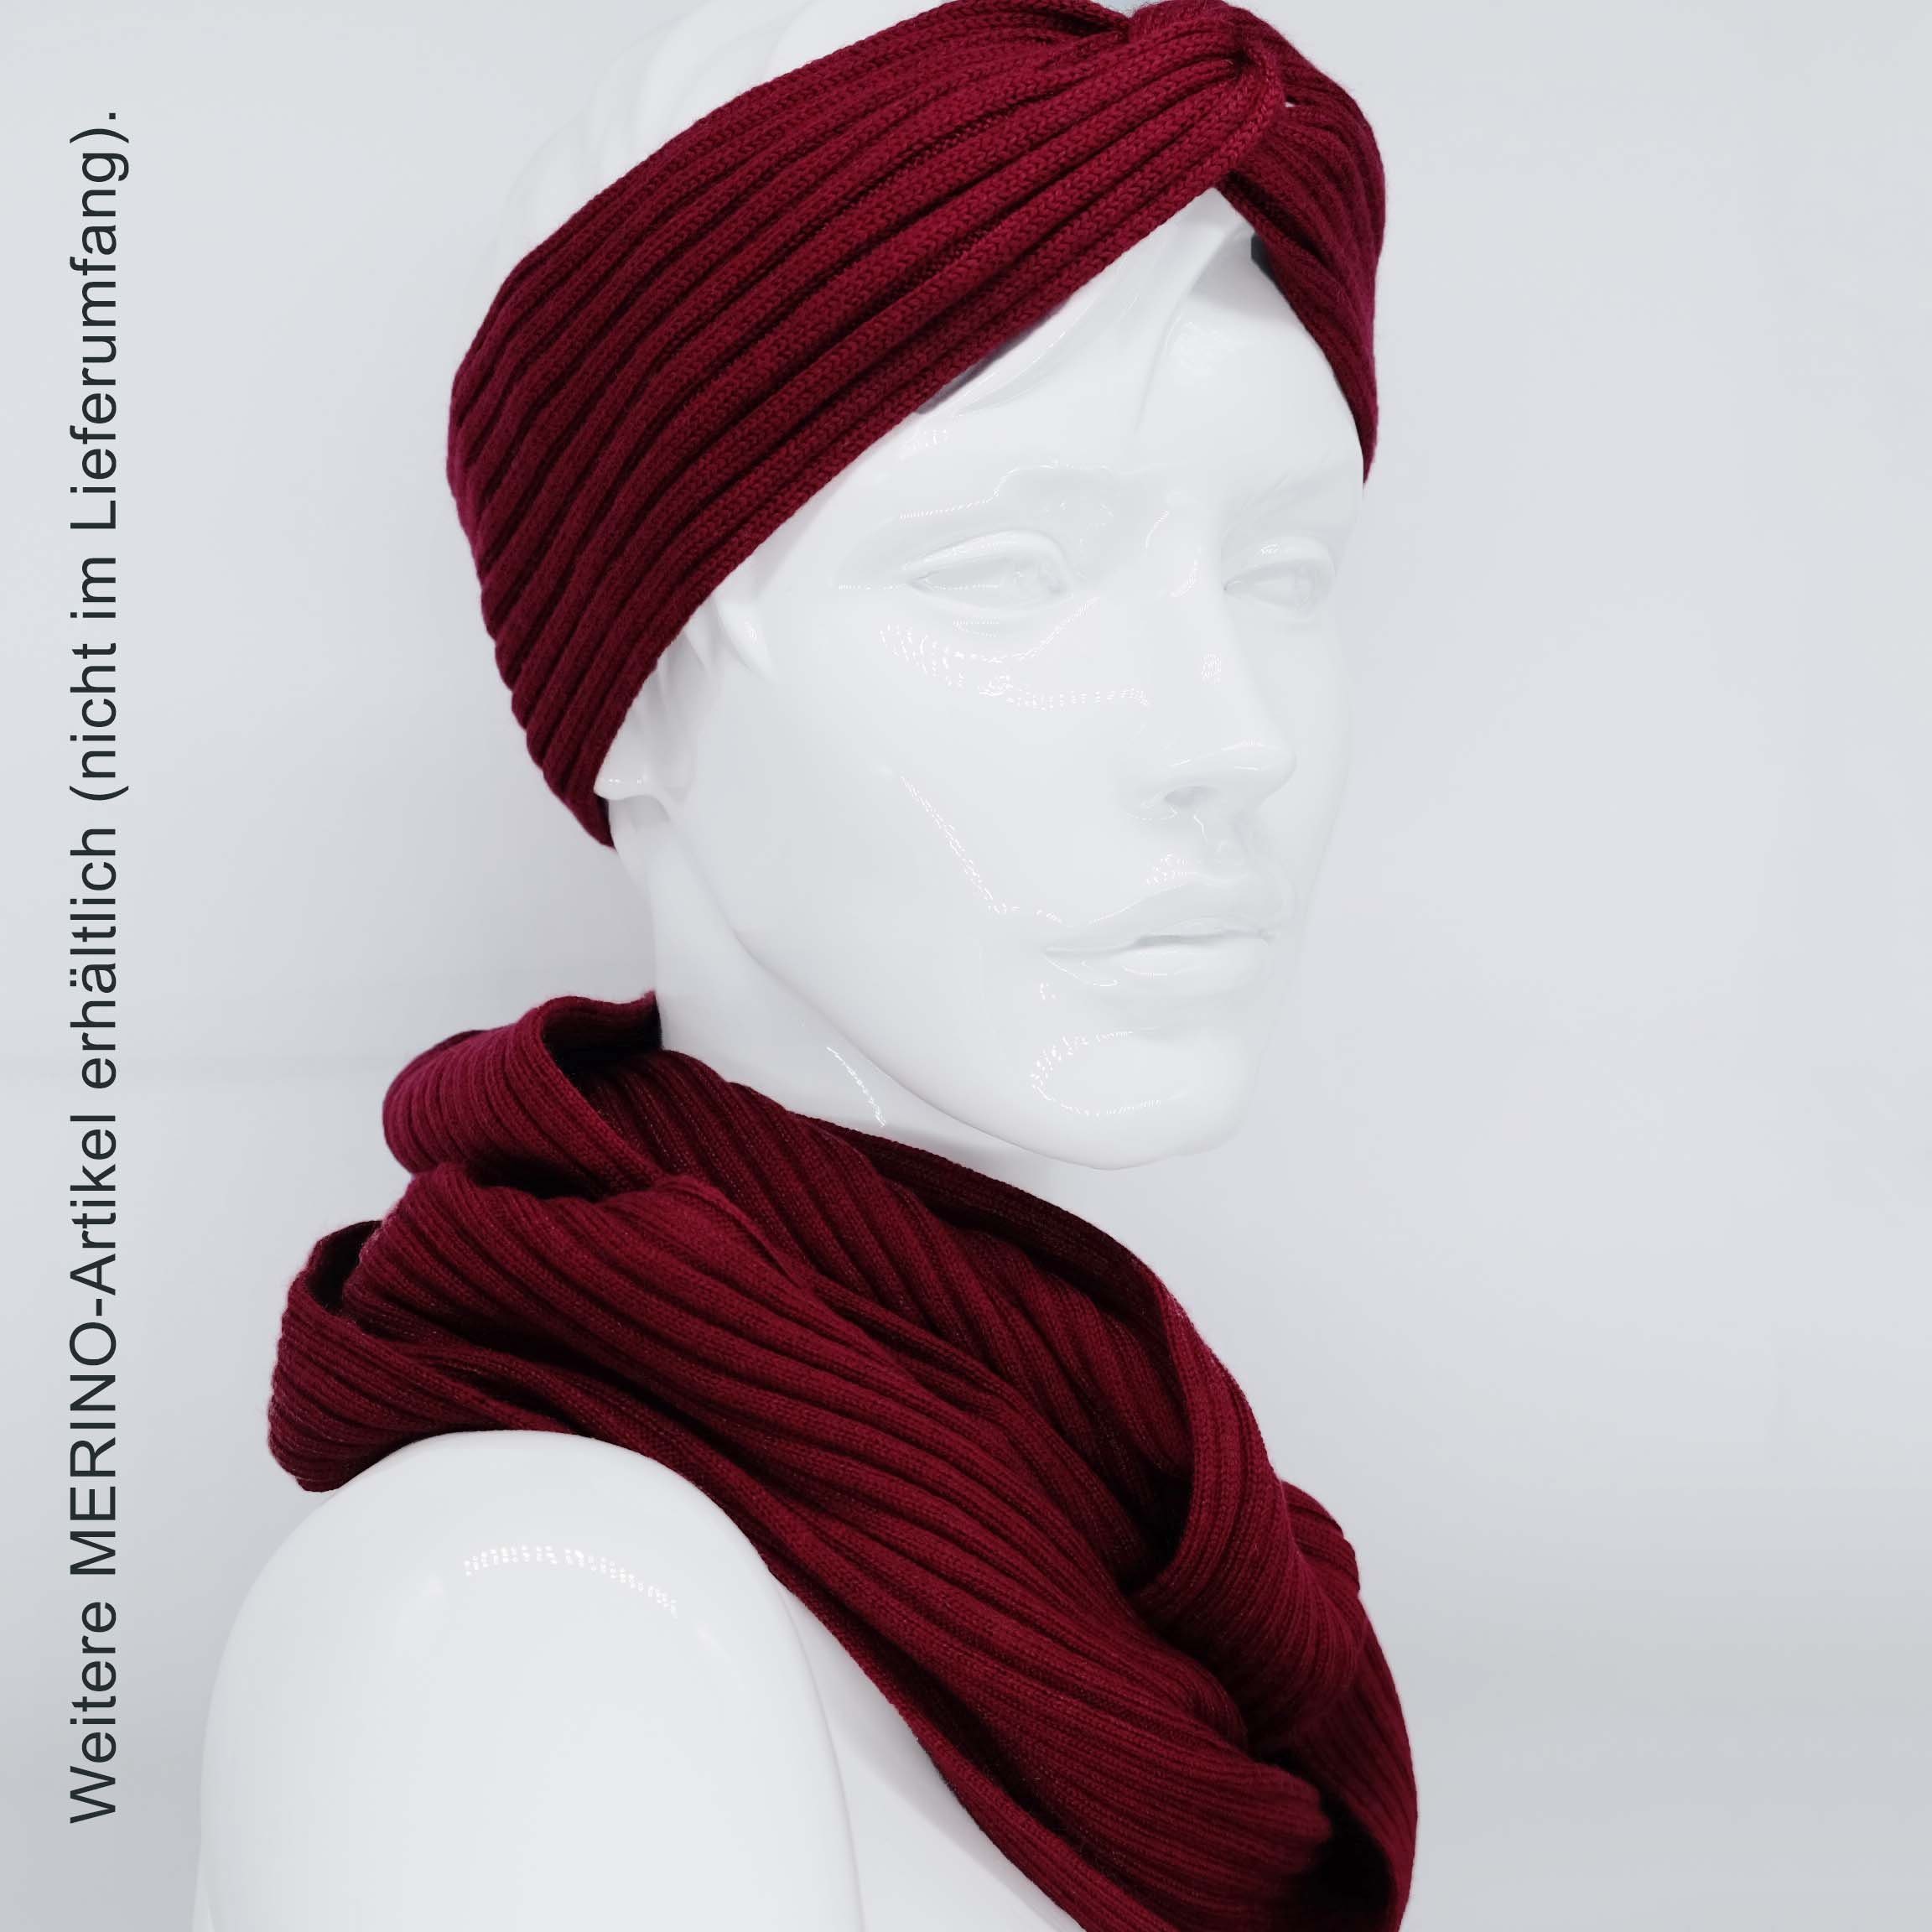 merlot Stirnband Damen Merino Stirnband Feinstrick, 100% BEAZZ WOLLE warm Ohrenwärmer Winter weich und helles rot